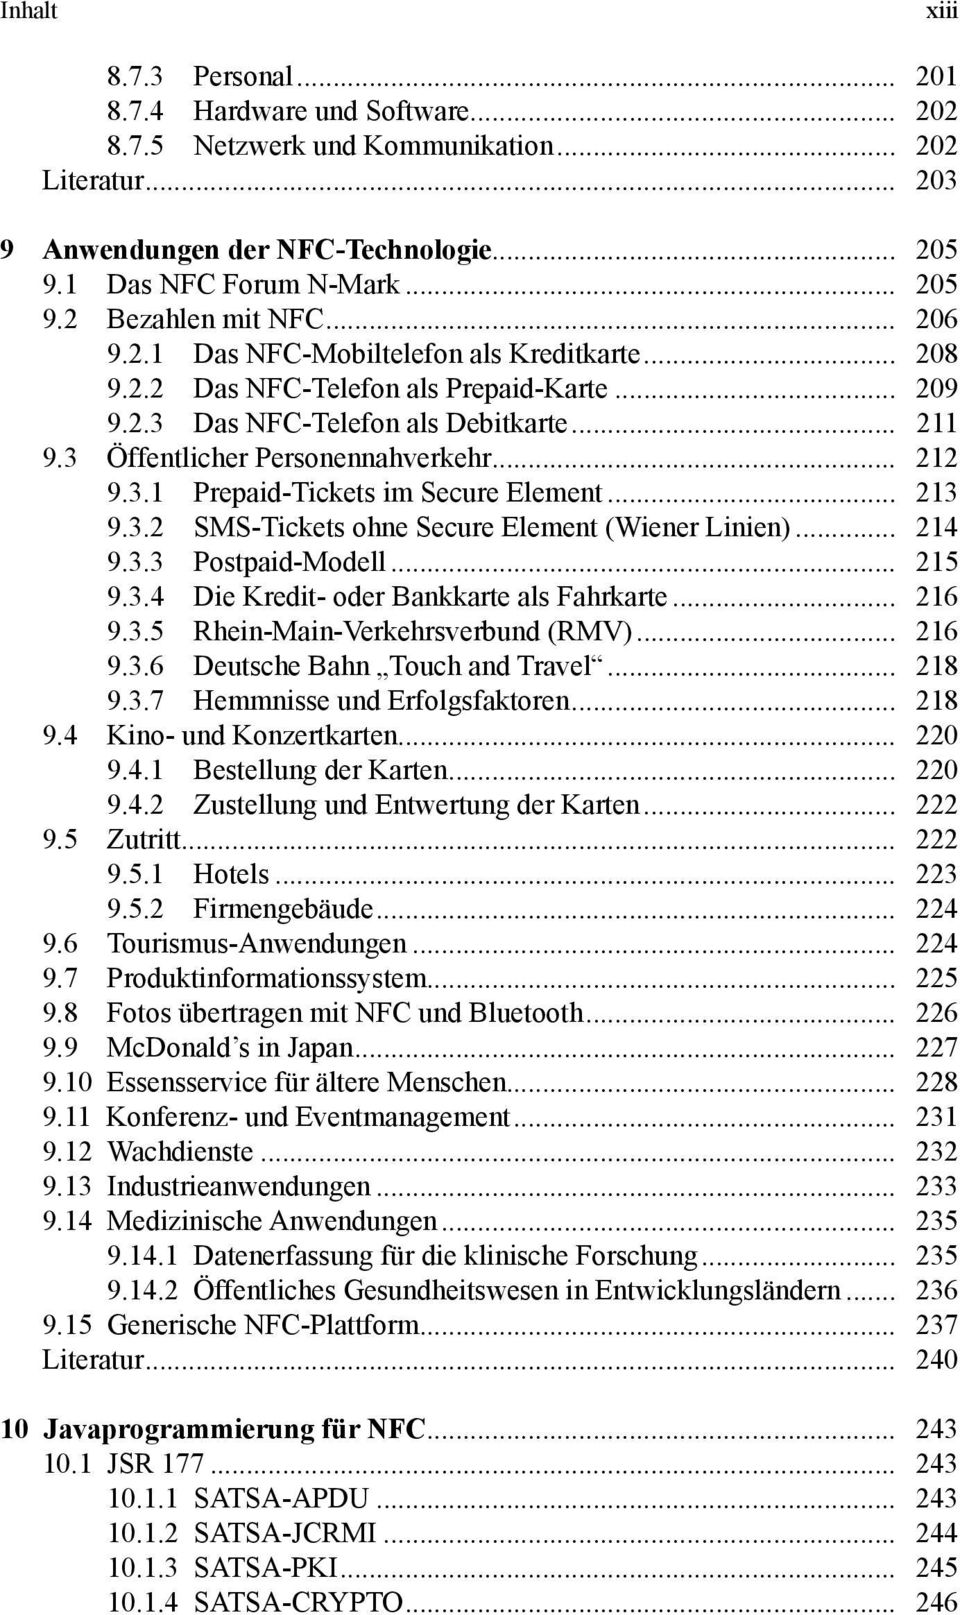 .. 213 9.3.2 SMS-Tickets ohne Secure Element (Wiener Linien)... 214 9.3.3 Postpaid-Modell... 215 9.3.4 Die Kredit- oder Bankkarte als Fahrkarte... 216 9.3.5 Rhein-Main-Verkehrsverbund (RMV)... 216 9.3.6 Deutsche Bahn Touch and Travel.